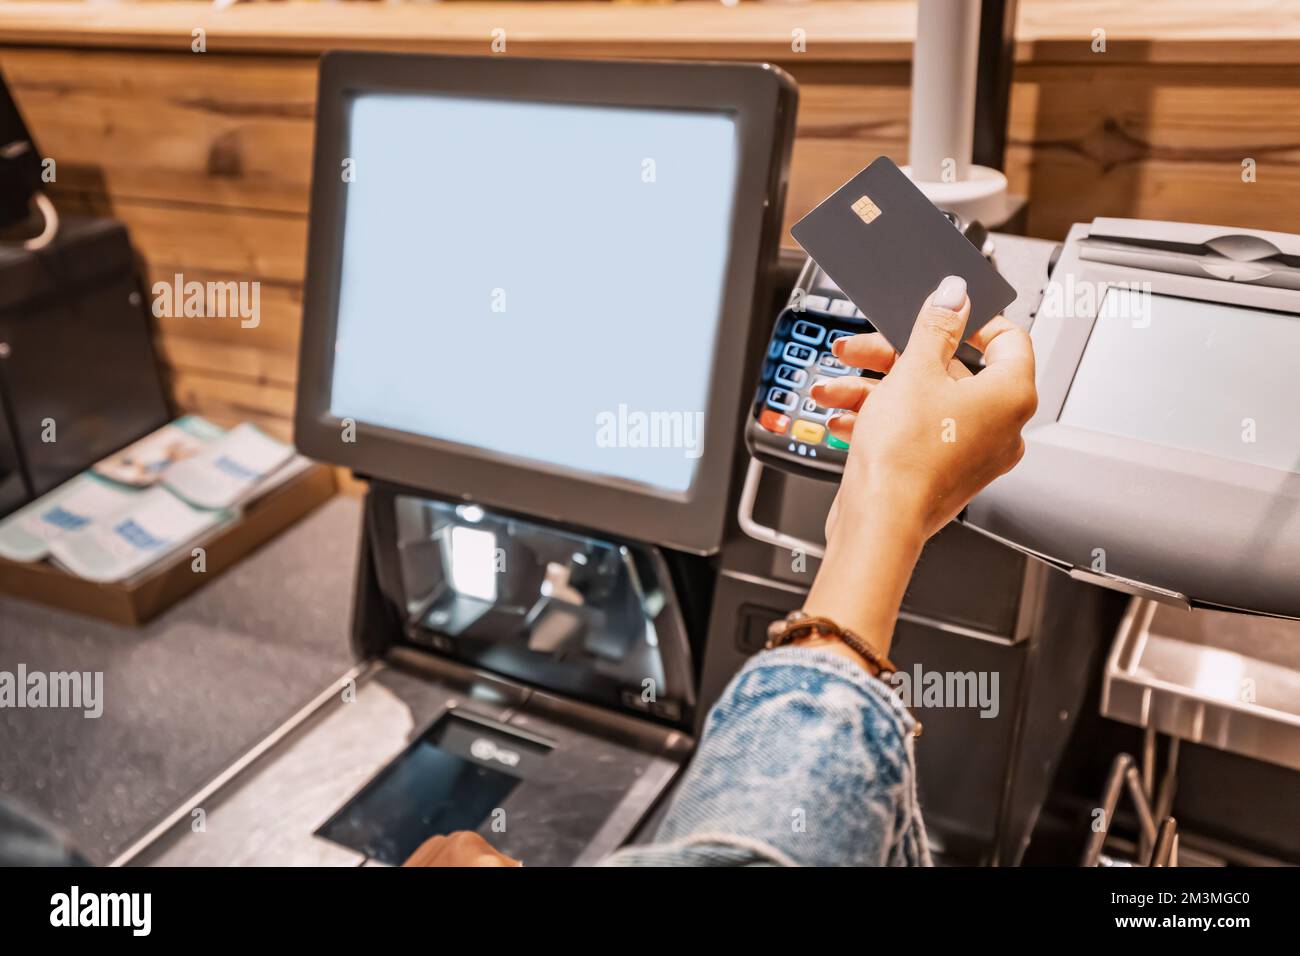 Die Käuferin belastet das POS-Terminal mit einer Kreditkarte, um die Einkäufe an der Self-Service-Kasse zu bezahlen Stockfoto